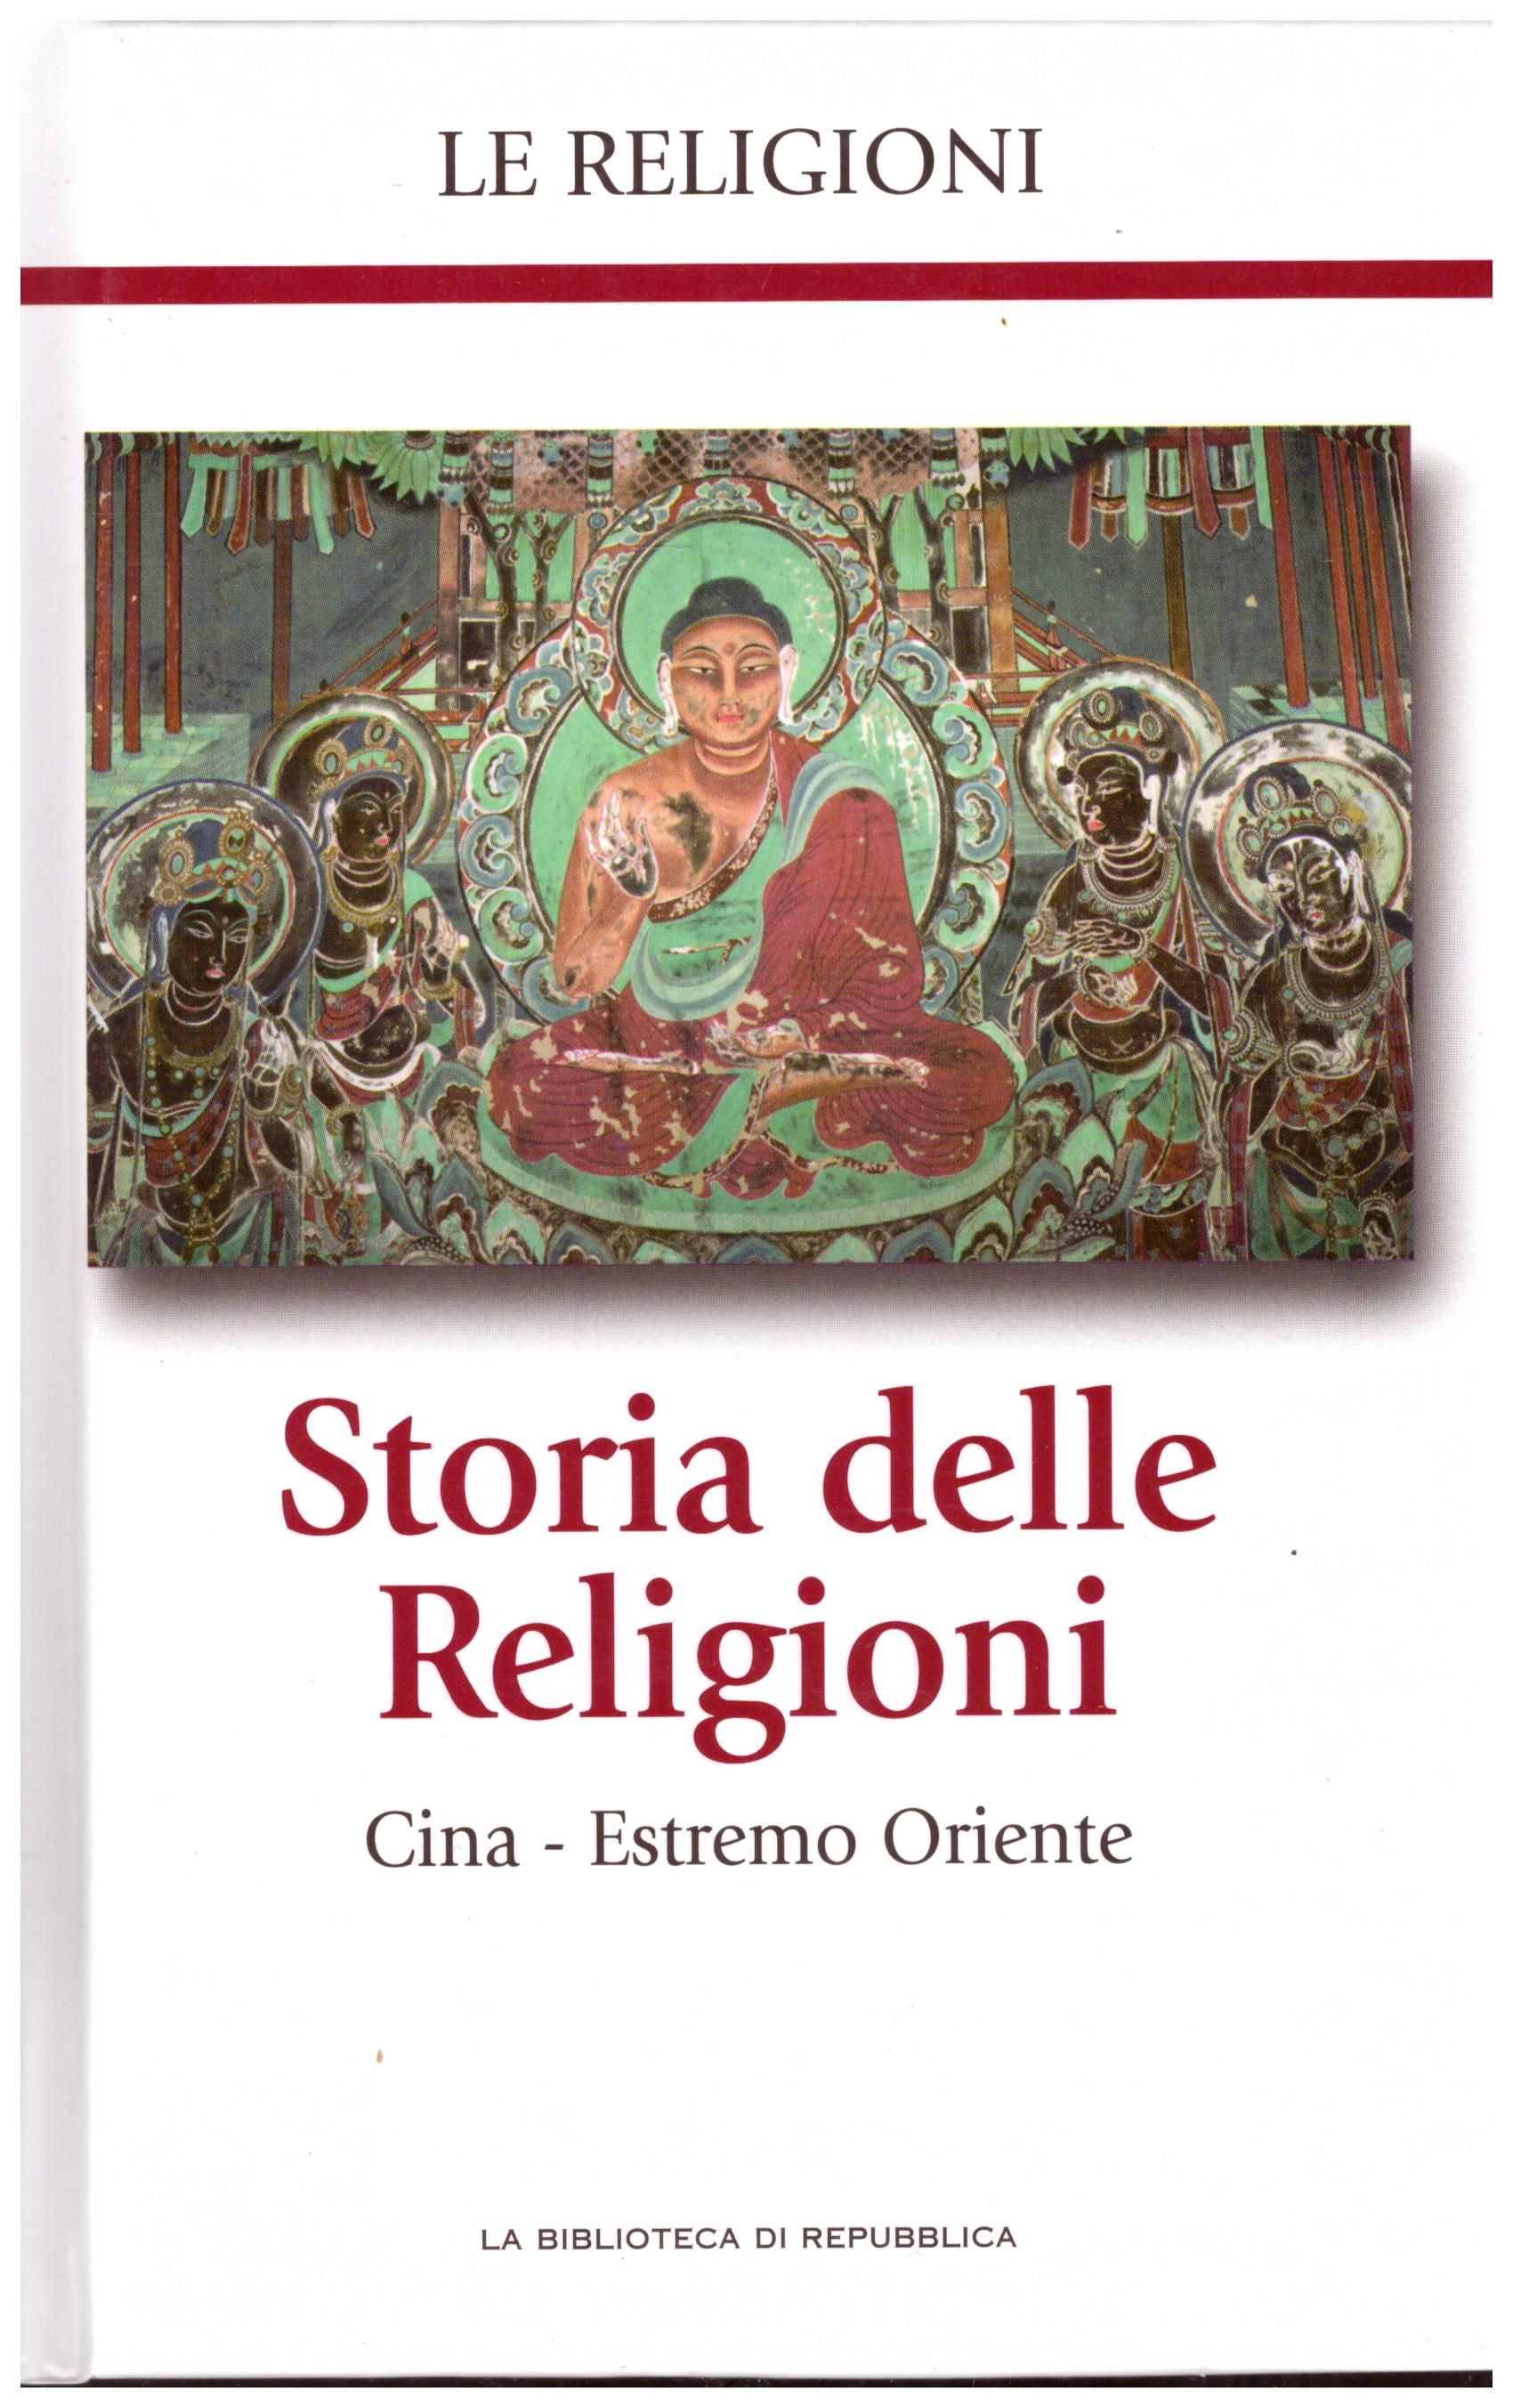 Titolo: Le religioni, Storia delle religioni, Cina-estremo oriente N.10      Autore: AA.VV, la biblioteca di Repubblica     Editore: Piemme